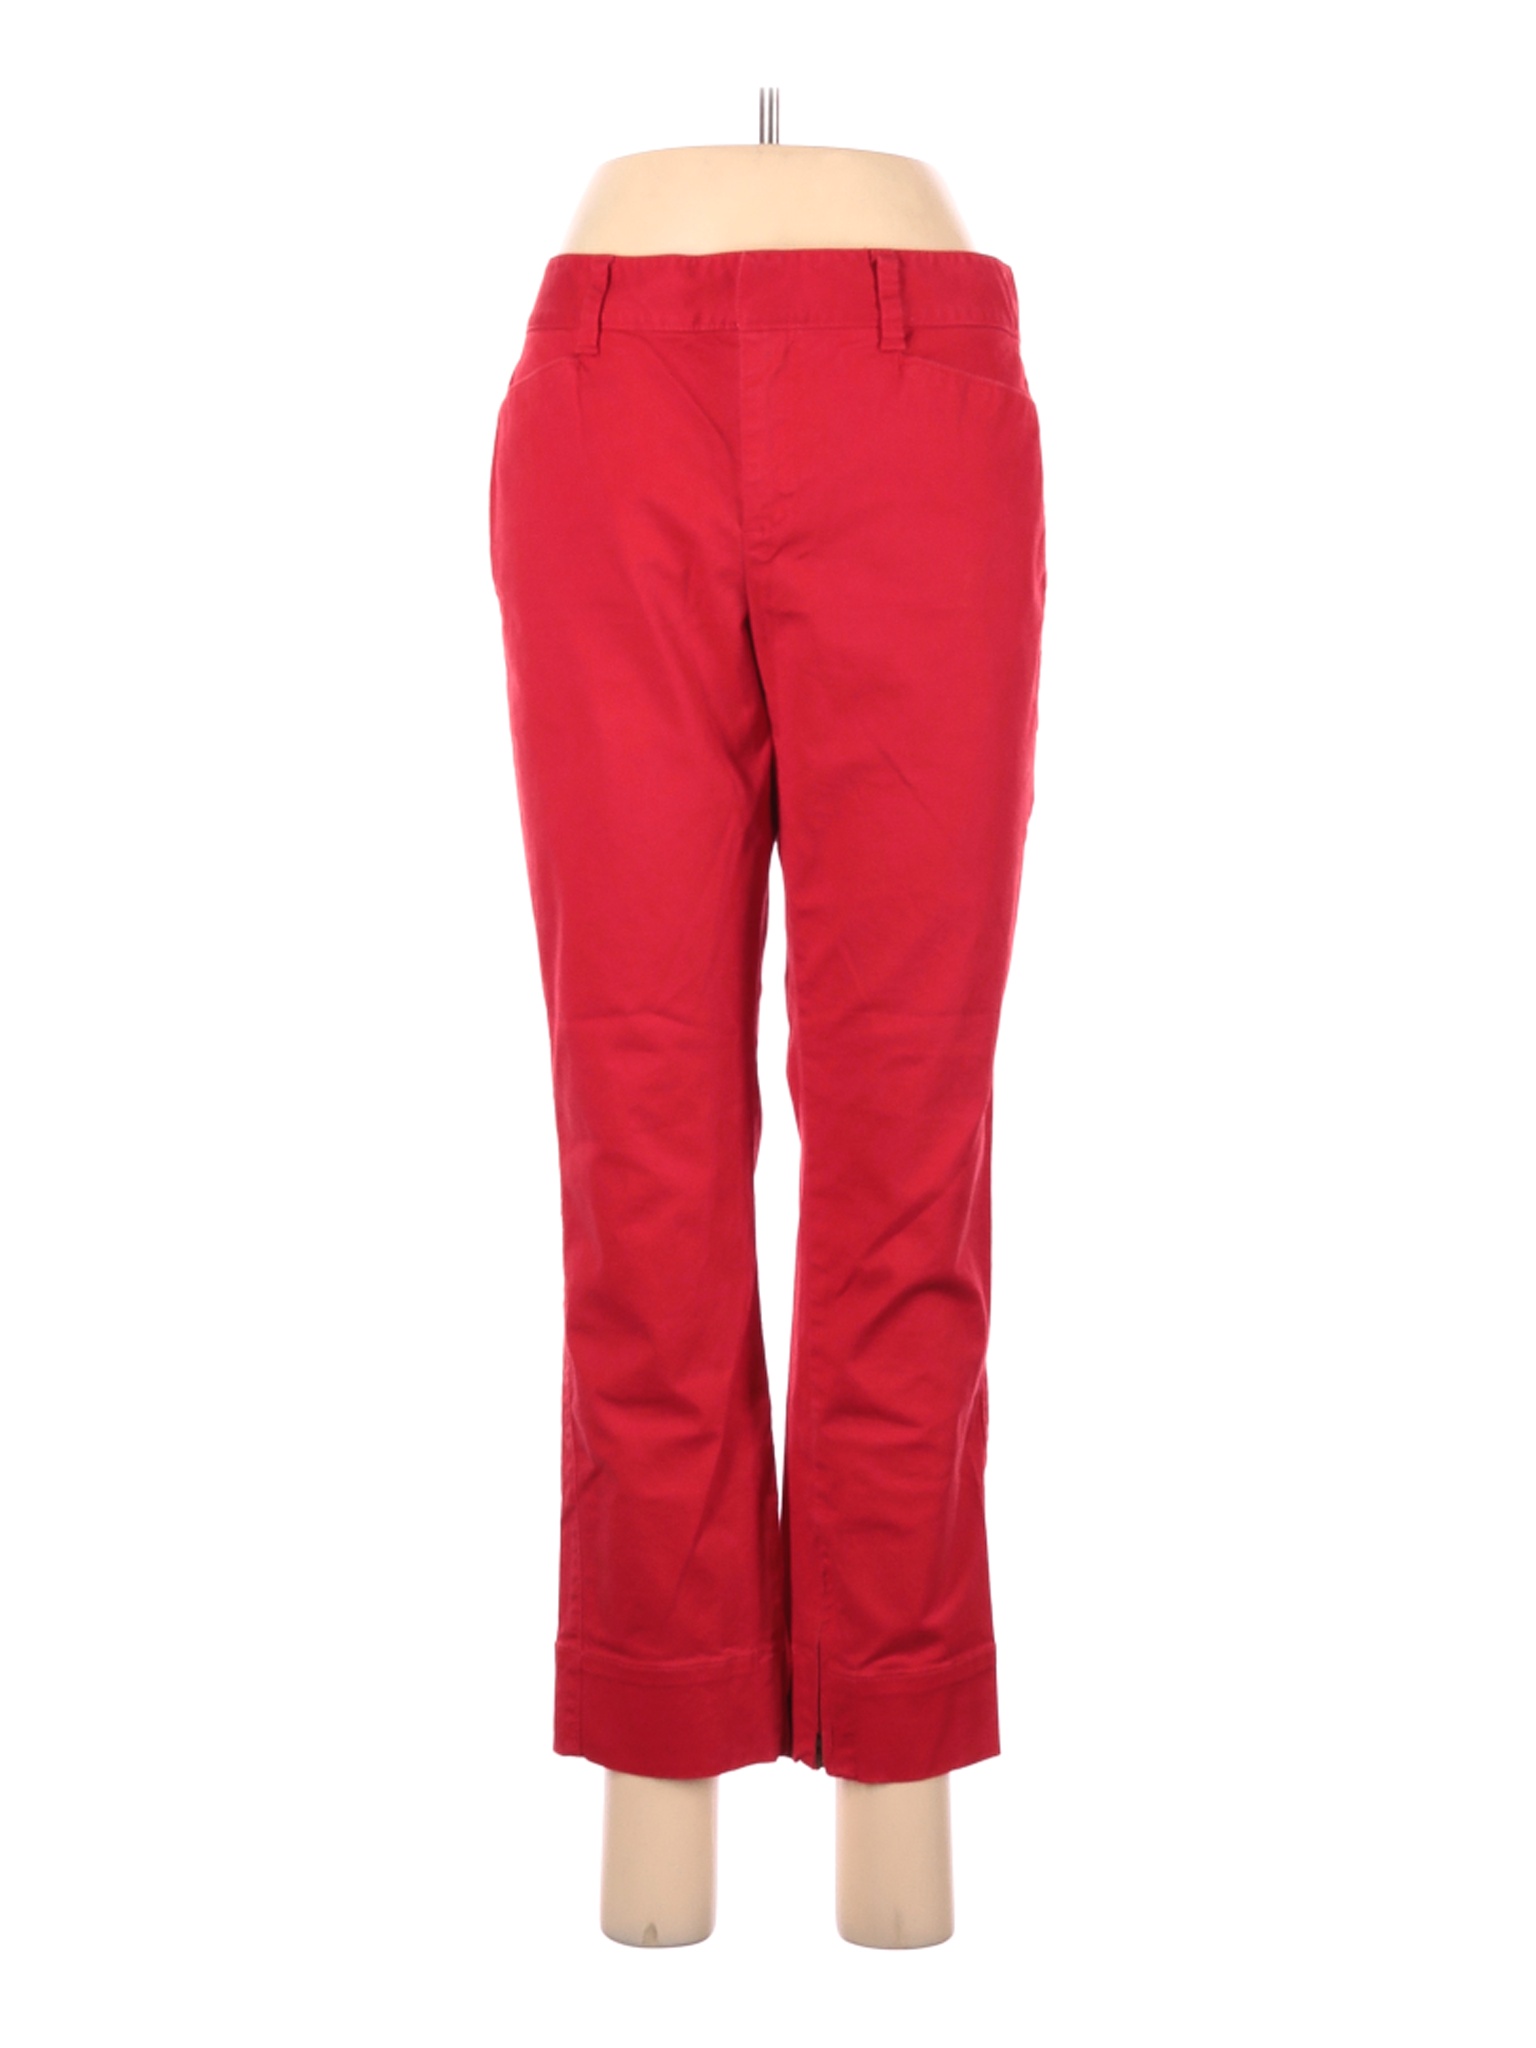 Ann Taylor LOFT Women Red Casual Pants 8 | eBay